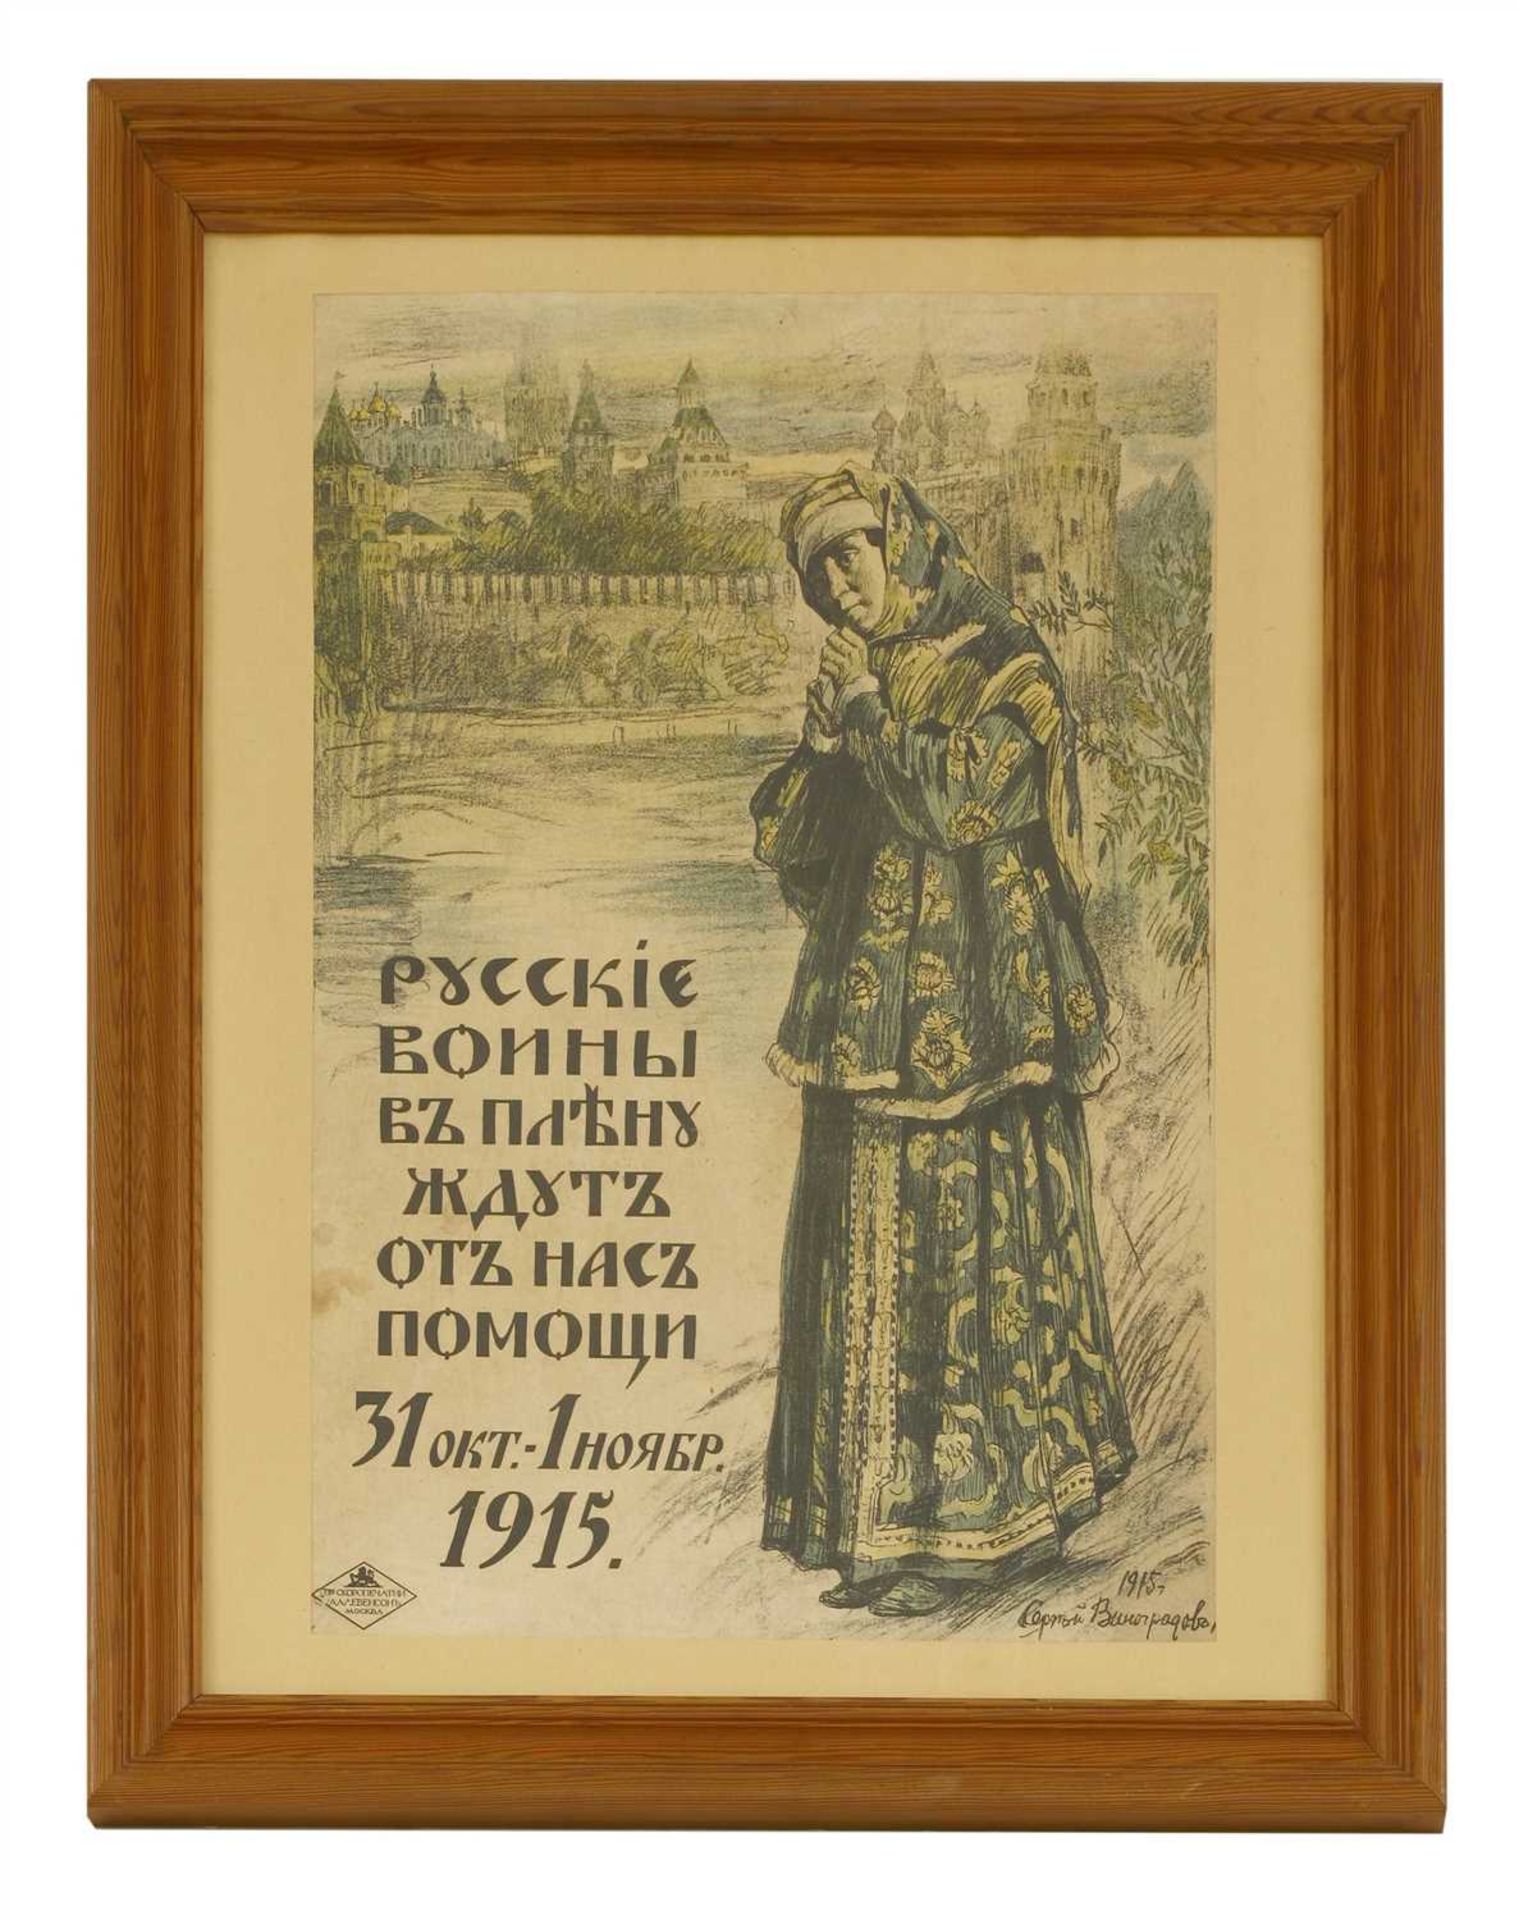 A Russian World War One poster,